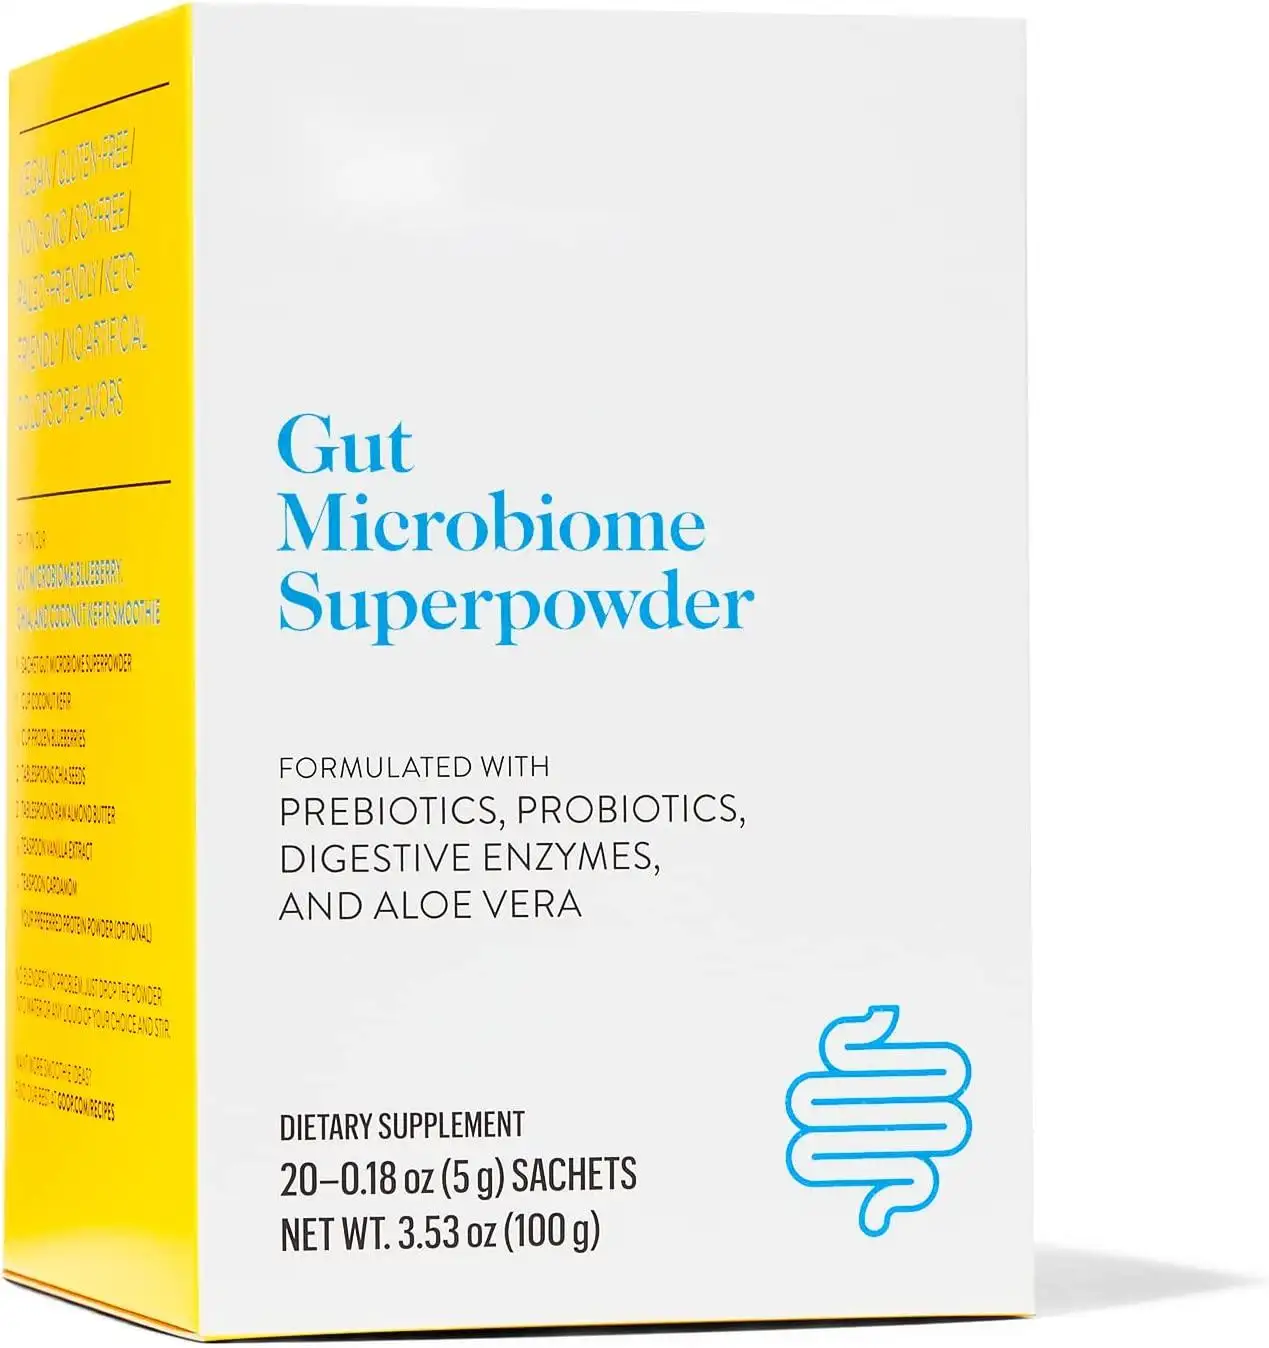 Darm mikro biom Super powder Probiotika Pulver in Beuteln unterstützt die Darm gesundheit lindert Blähungen und fördert eine gesunde Darm funktion